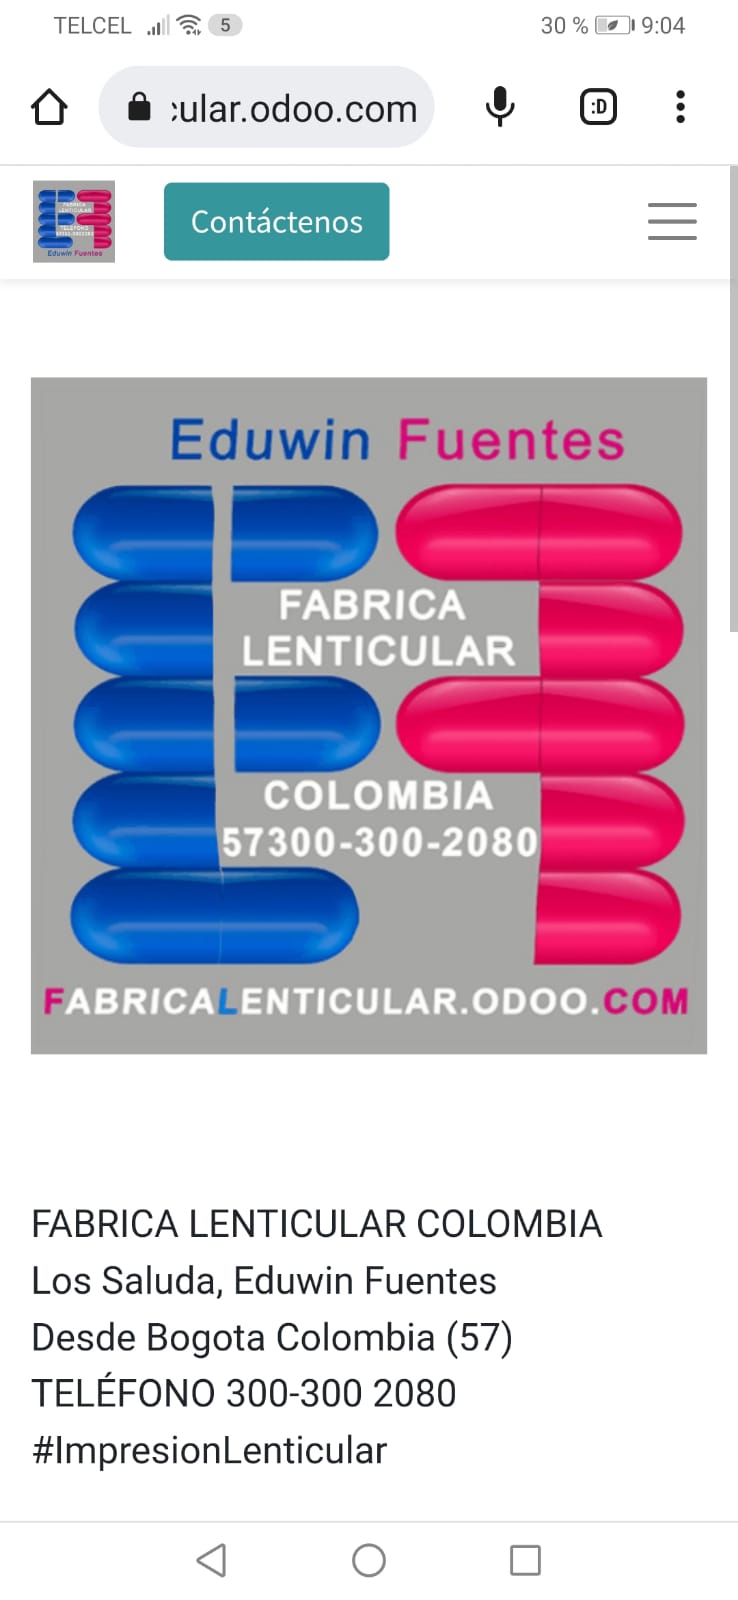 TELCEL wl= 8 30% Fe 19.04

( @ wularodoo.com &amp; :

BH EX =

FABRICA
LENTICULAR

COLOMBIA
57300-300-2080

ABRICA ENTICULAR.ODOO.

 

FABRICA LENTICULAR COLOMBIA
Los Saluda, Eduwin Fuentes
Desde Bogota Colombia (57)
TELEFONO 300-300 2080
#lmpresionLenticular

d Oo O